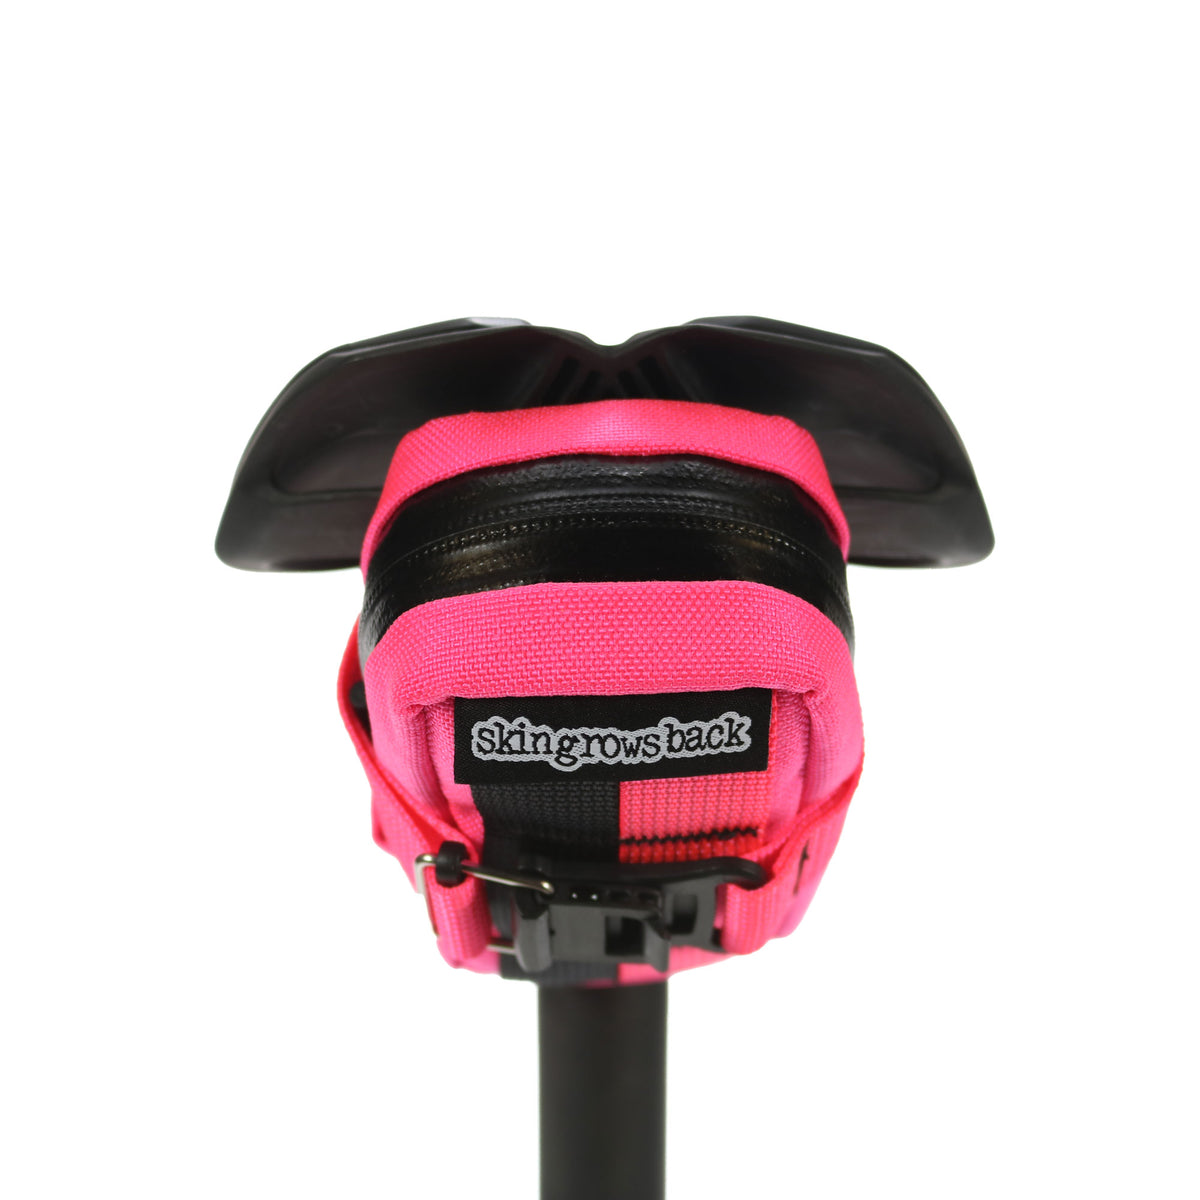 skingrowsback plan b cycling saddle bag neon pink strap